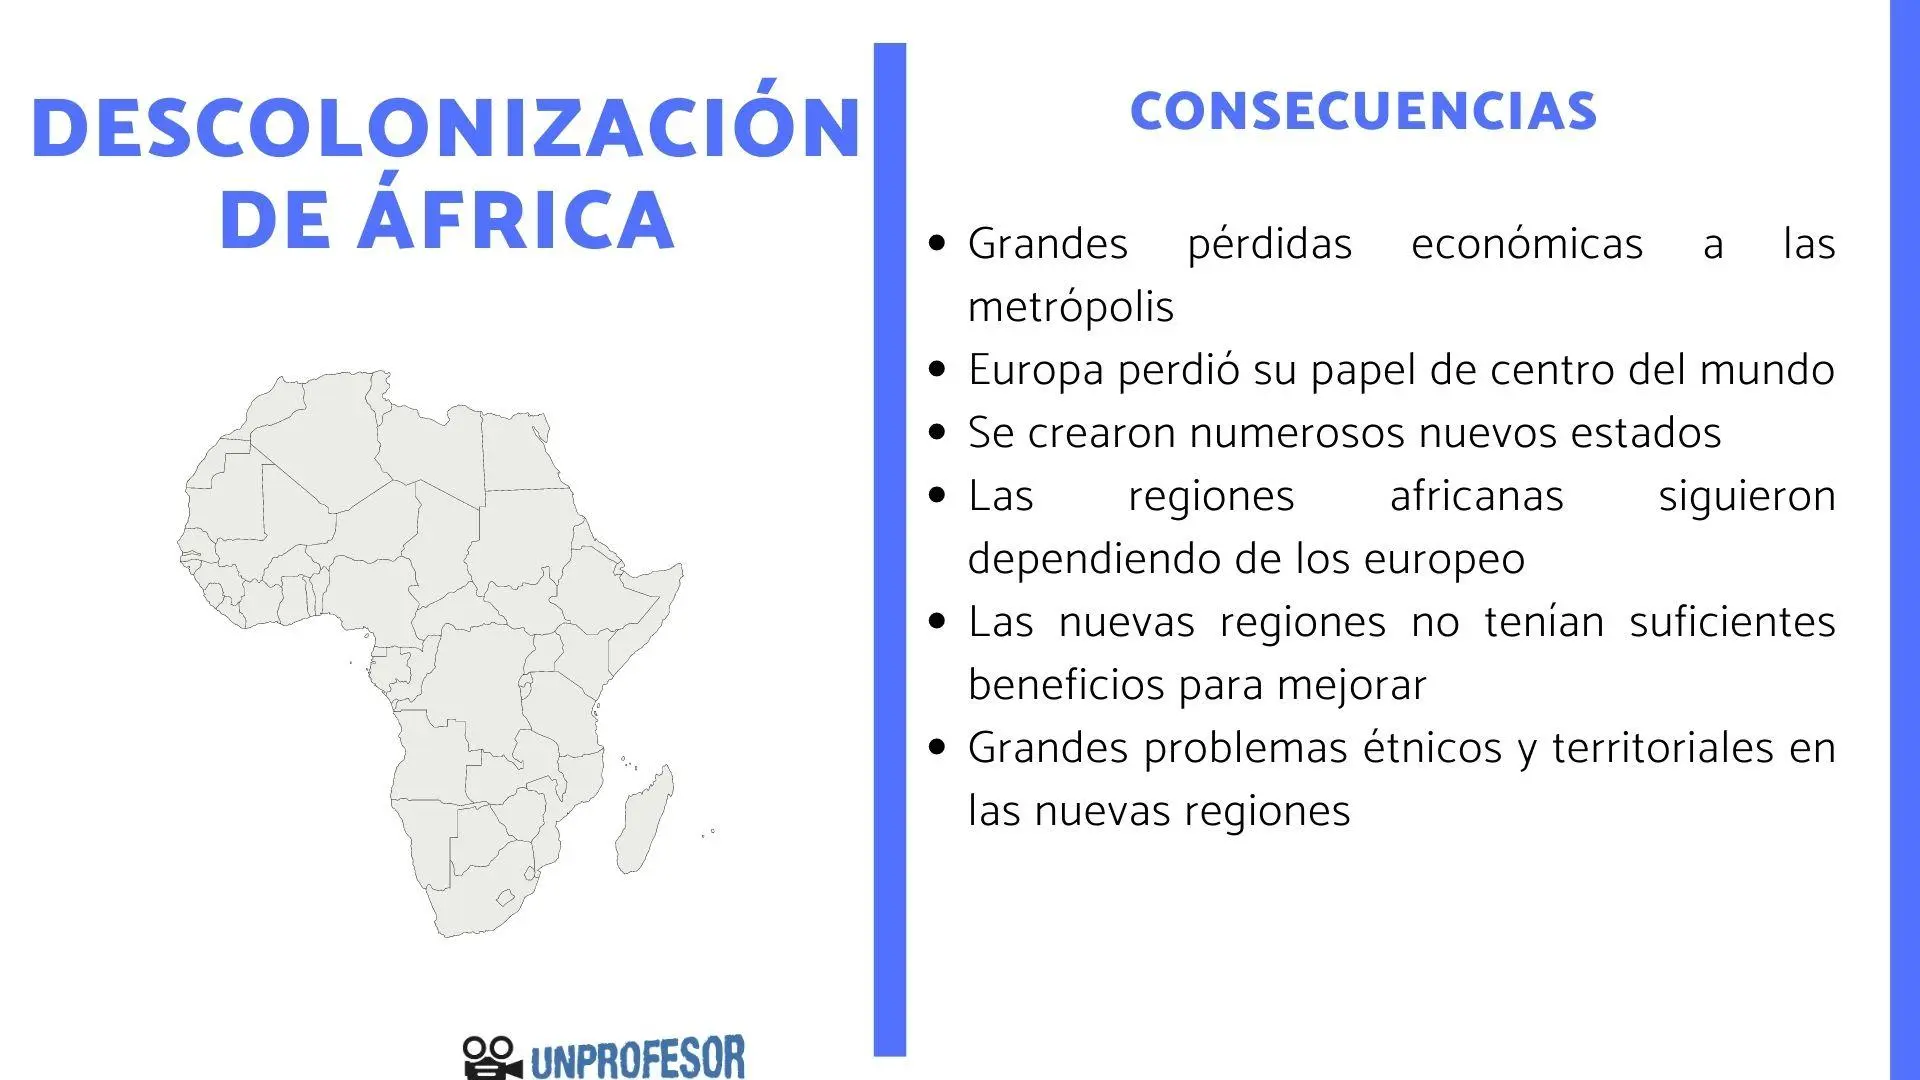 descolonizacion de africa resumen - Como afectó la descolonizacion de África